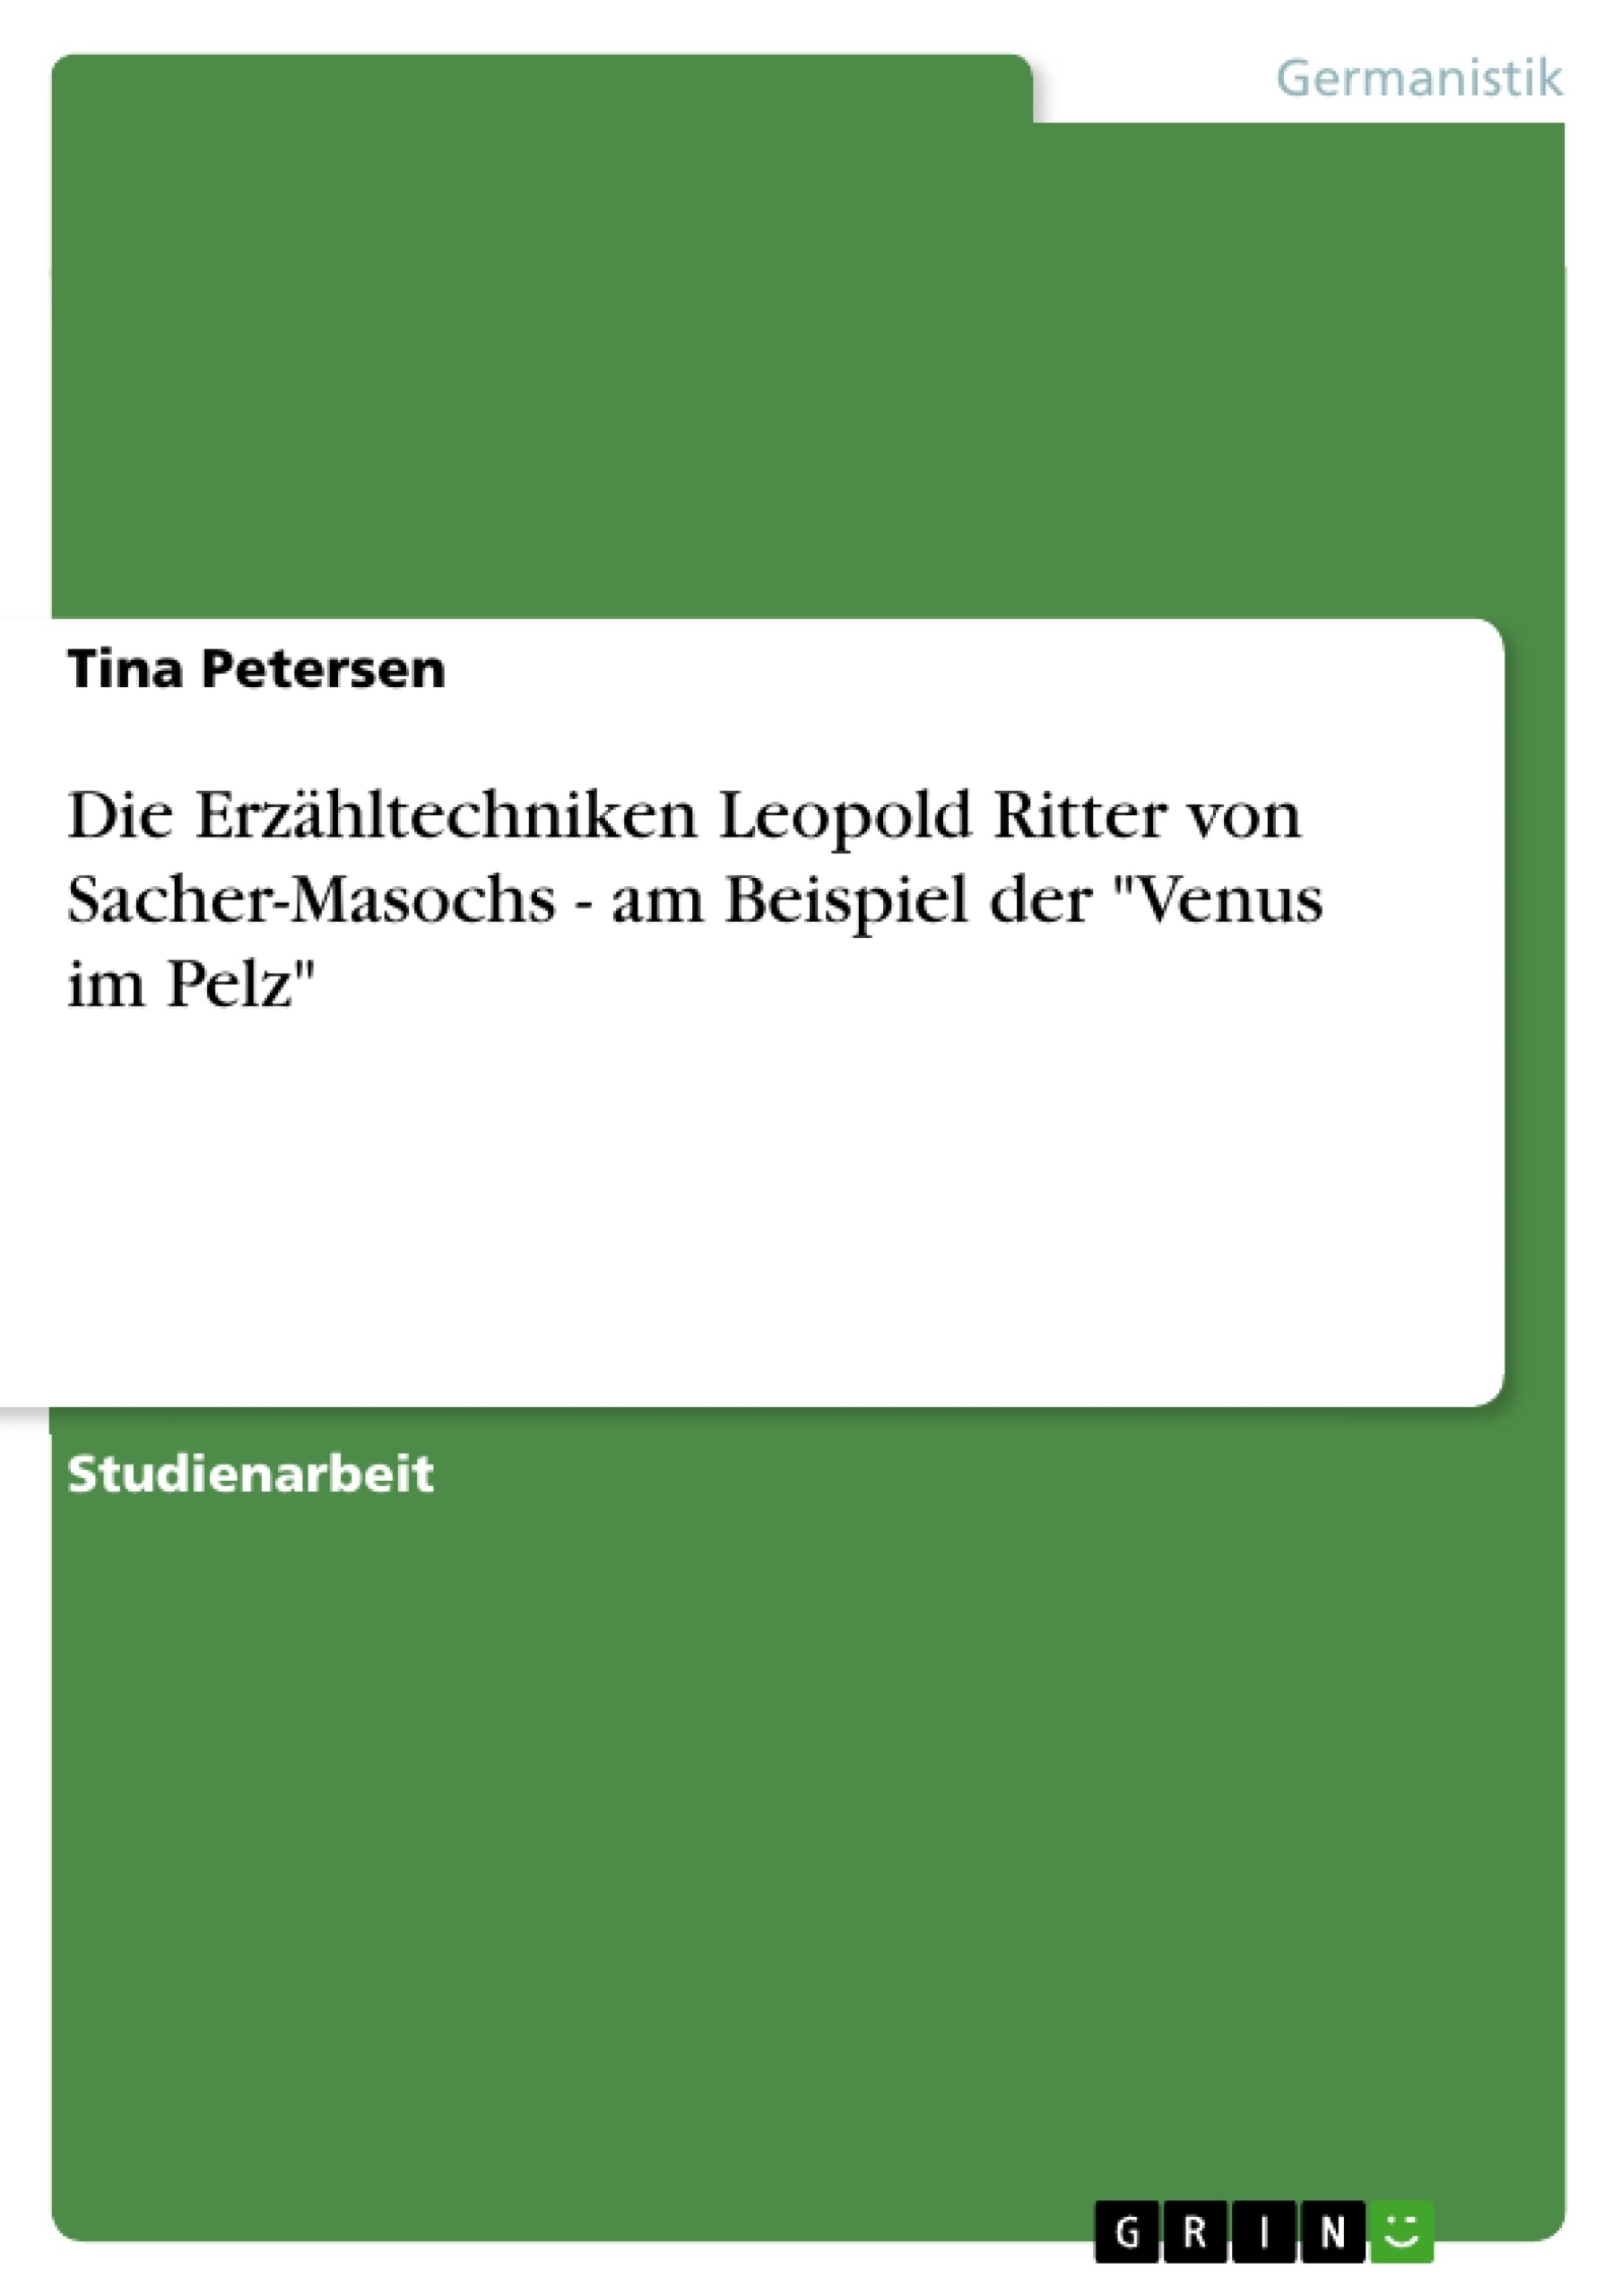 Titre: Die Erzähltechniken Leopold Ritter von Sacher-Masochs - am Beispiel der "Venus im Pelz"